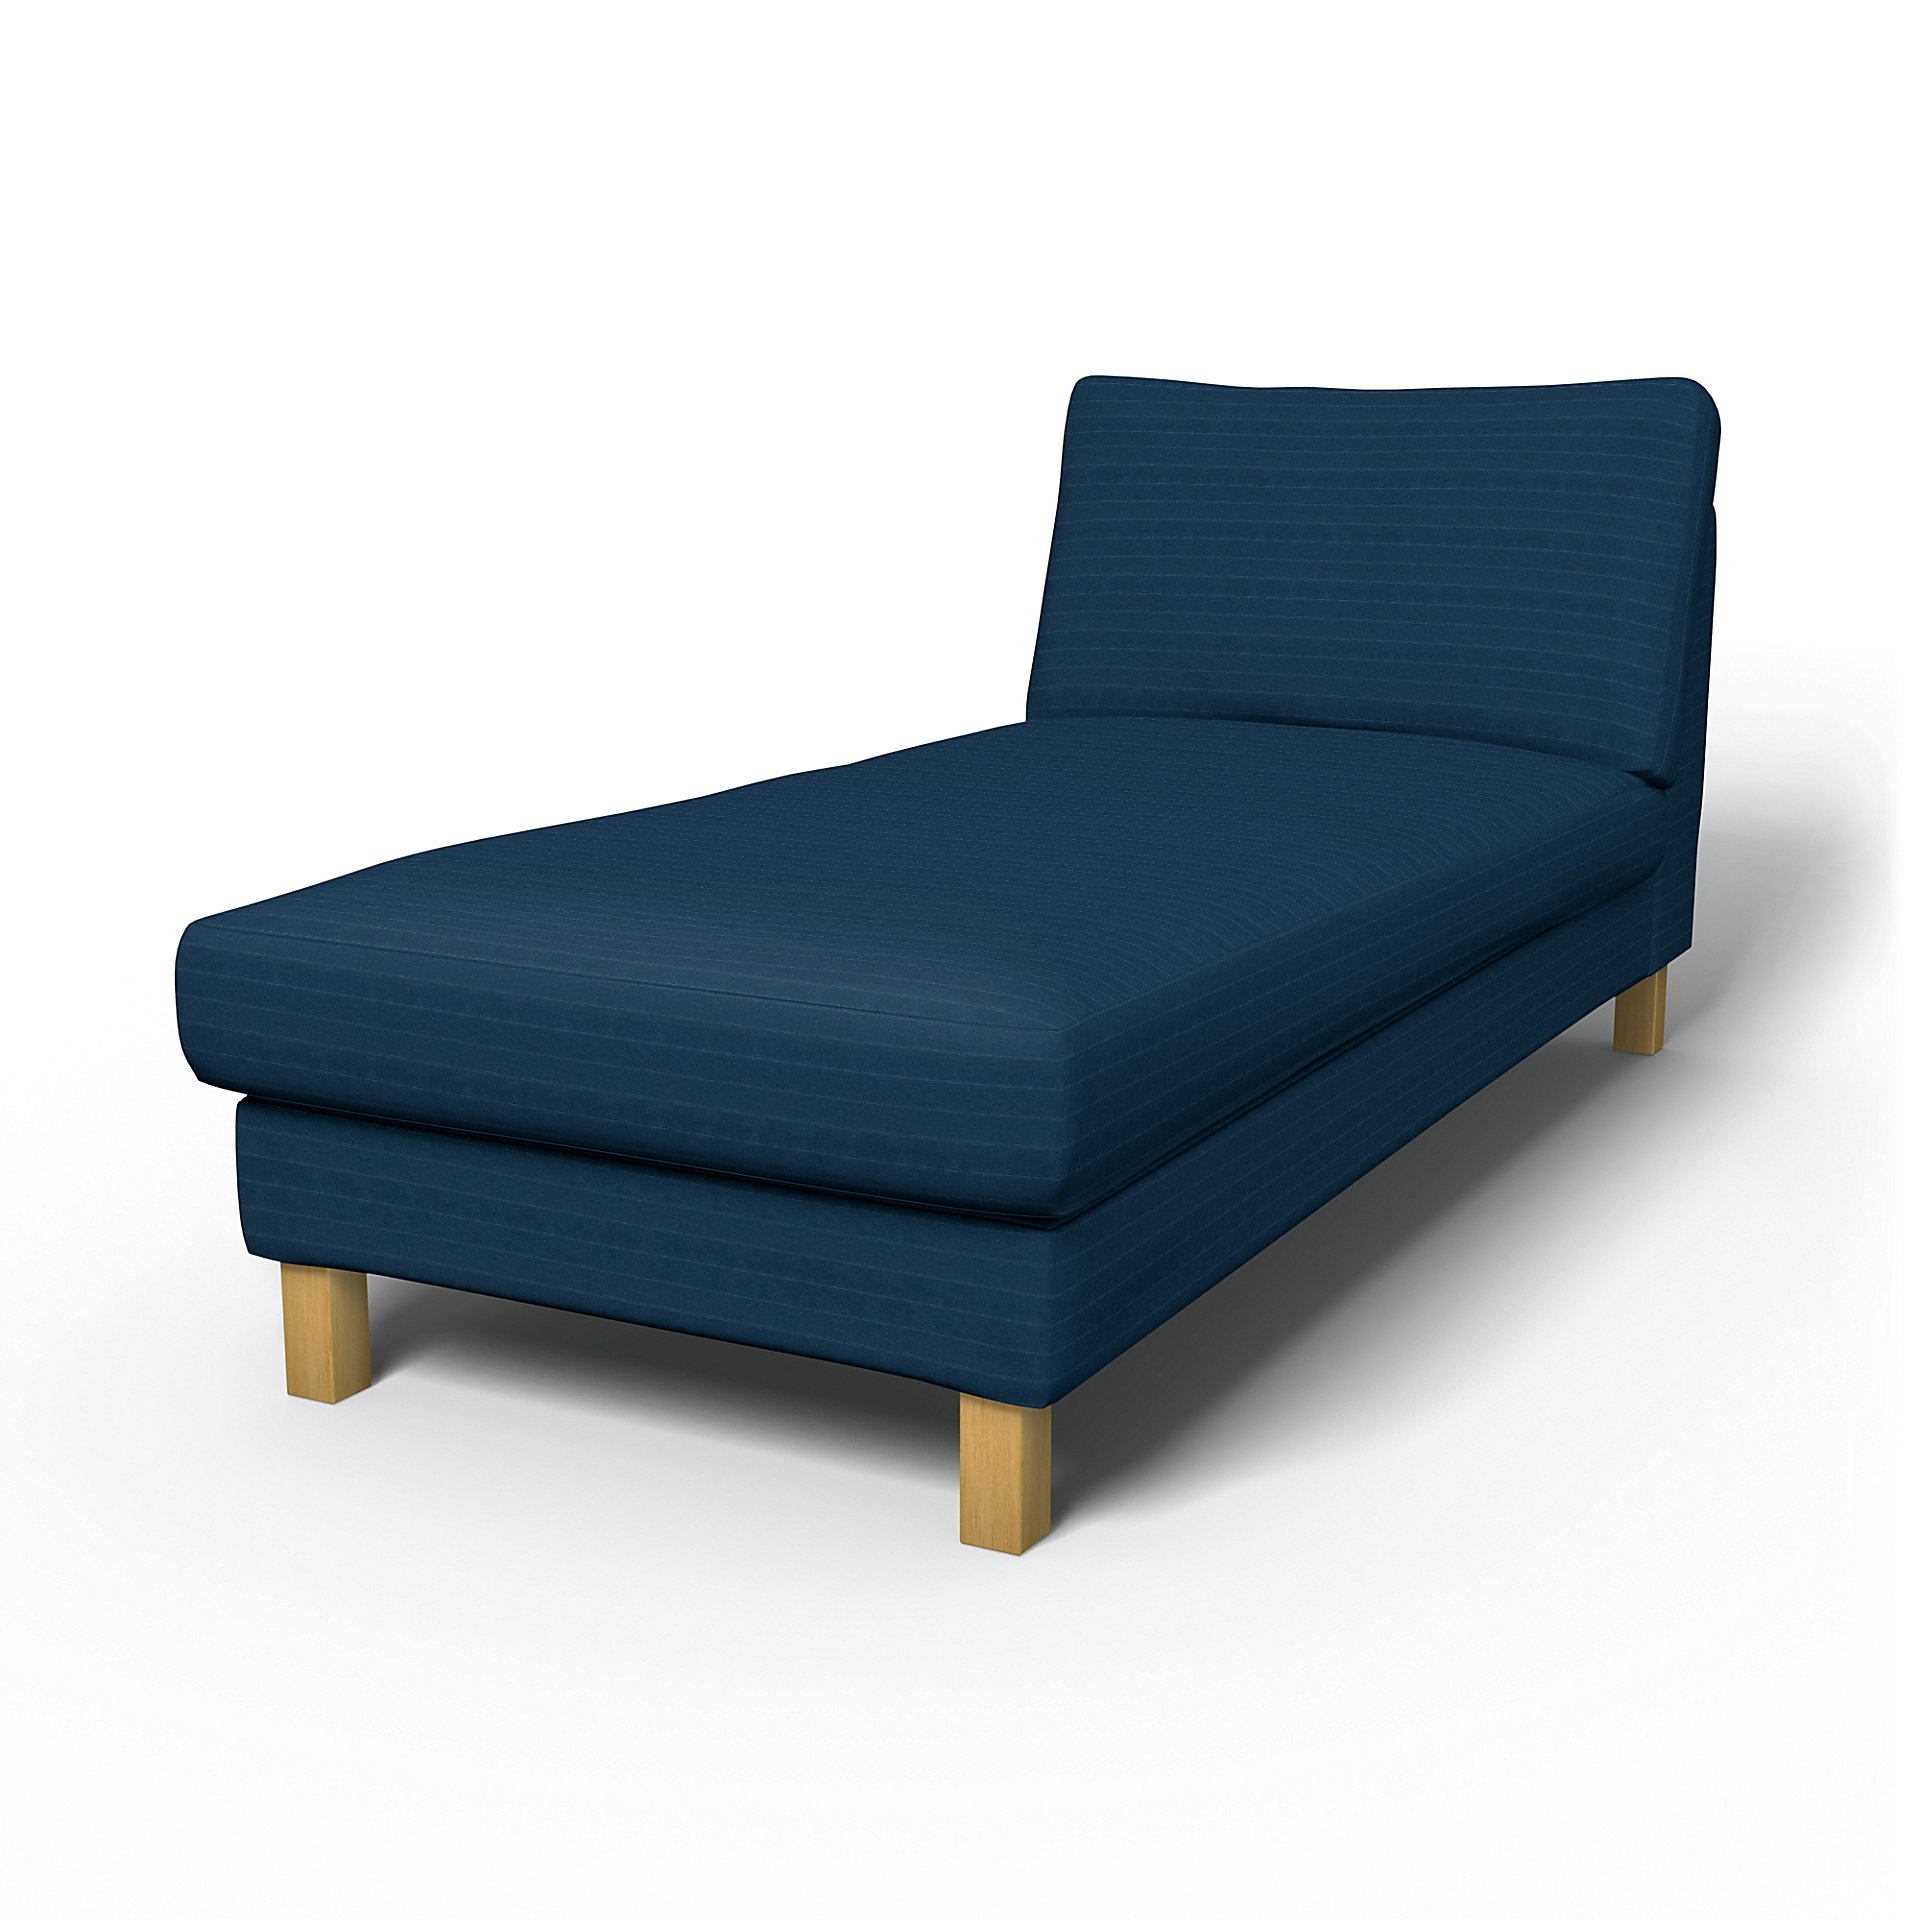 IKEA - Karlstad Stand Alone Chaise Longue Cover, Denim Blue, Velvet - Bemz